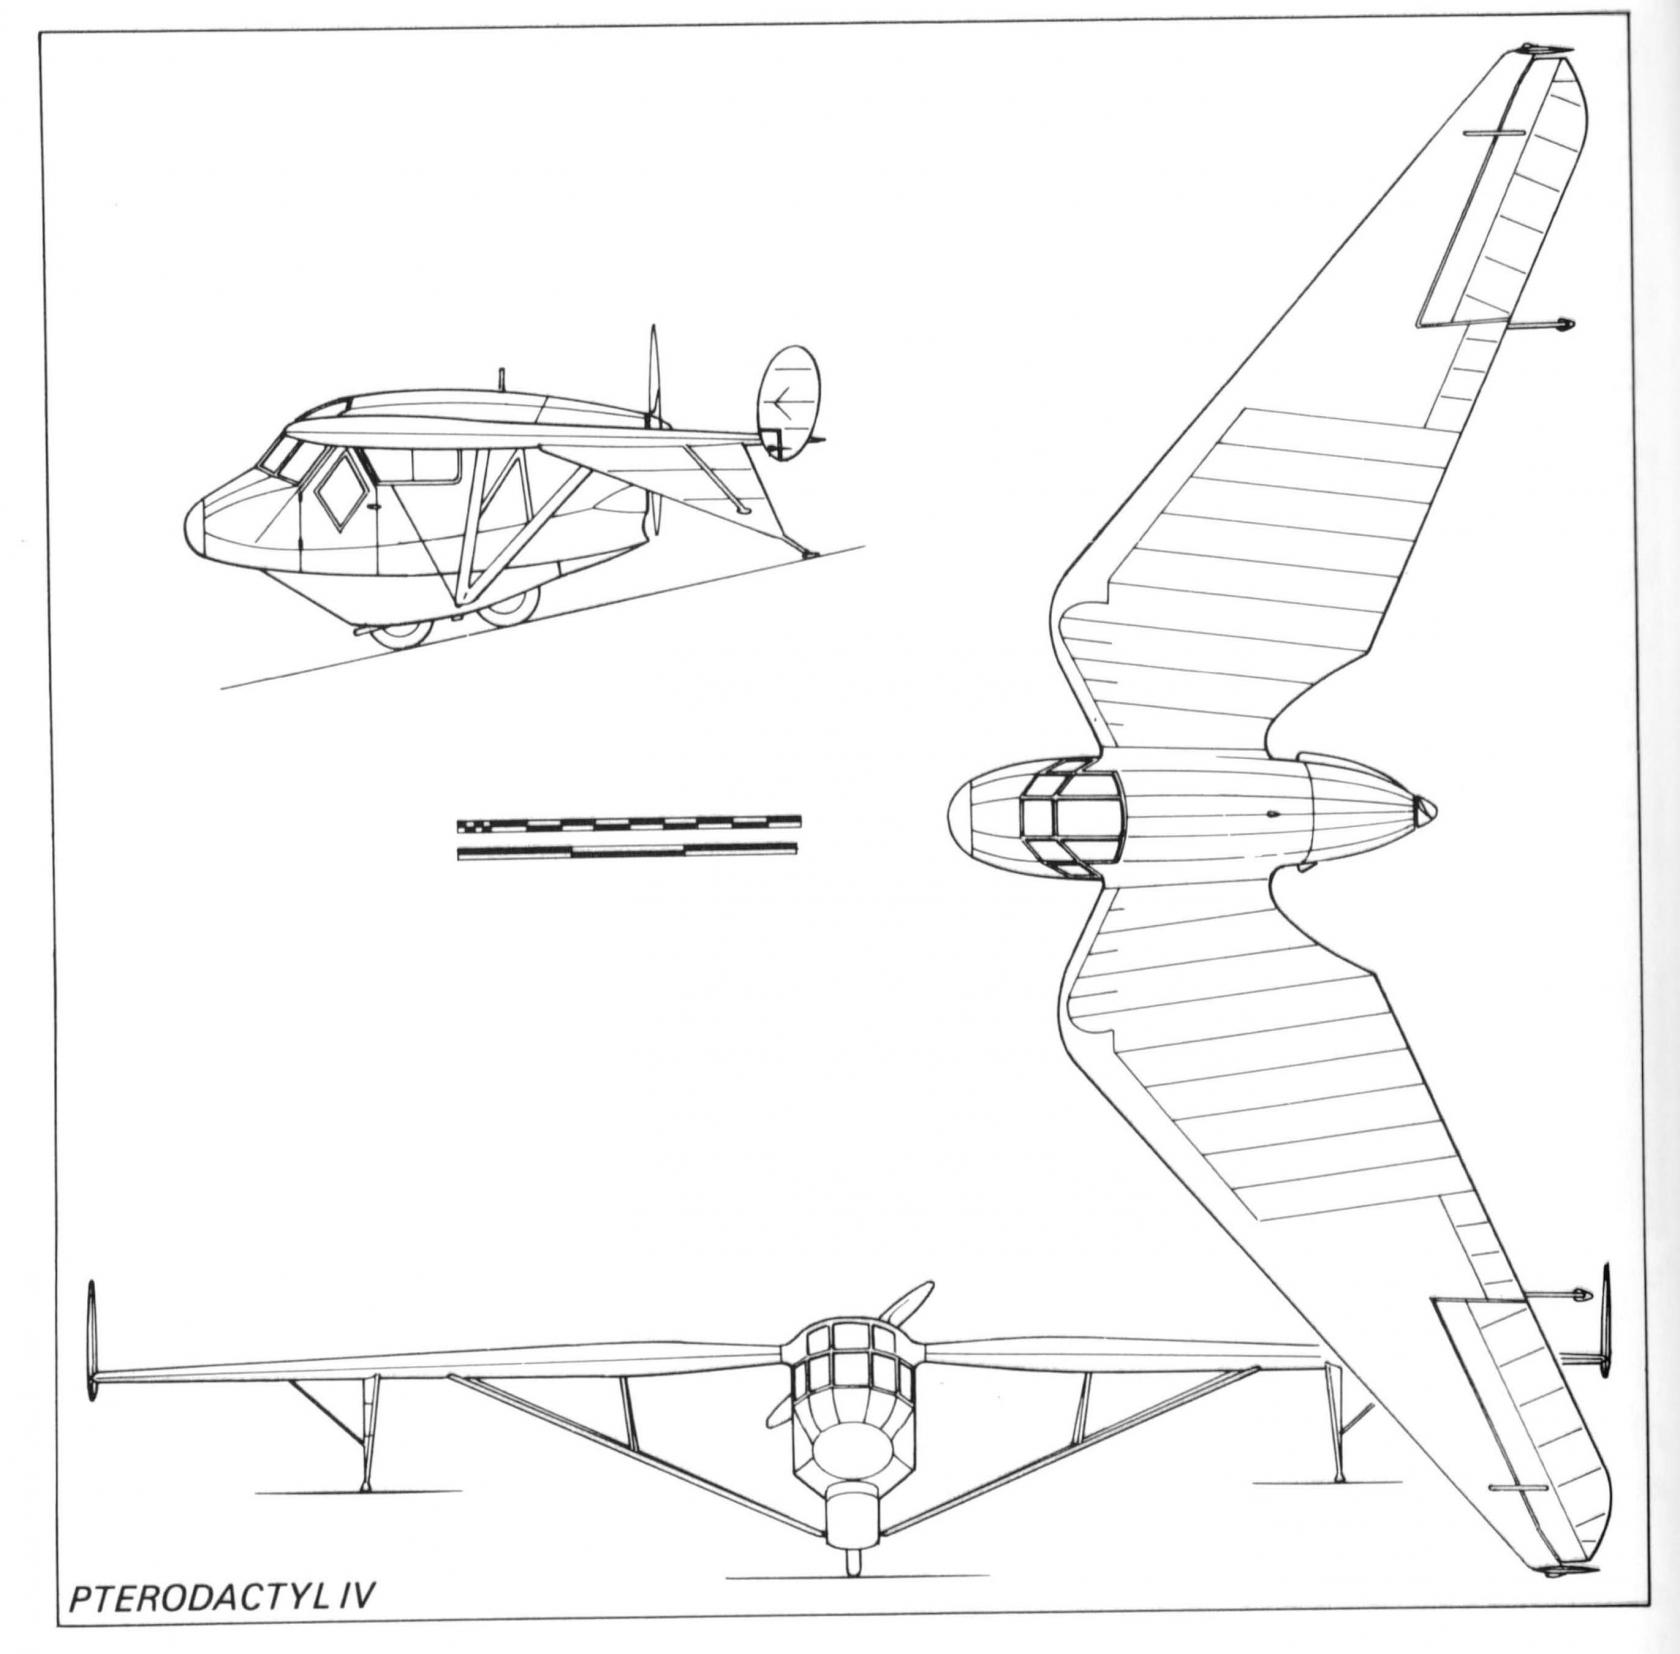 История птеродактилей. Опытный экспериментальный самолет Westland Pterodactyl IV. Великобритания